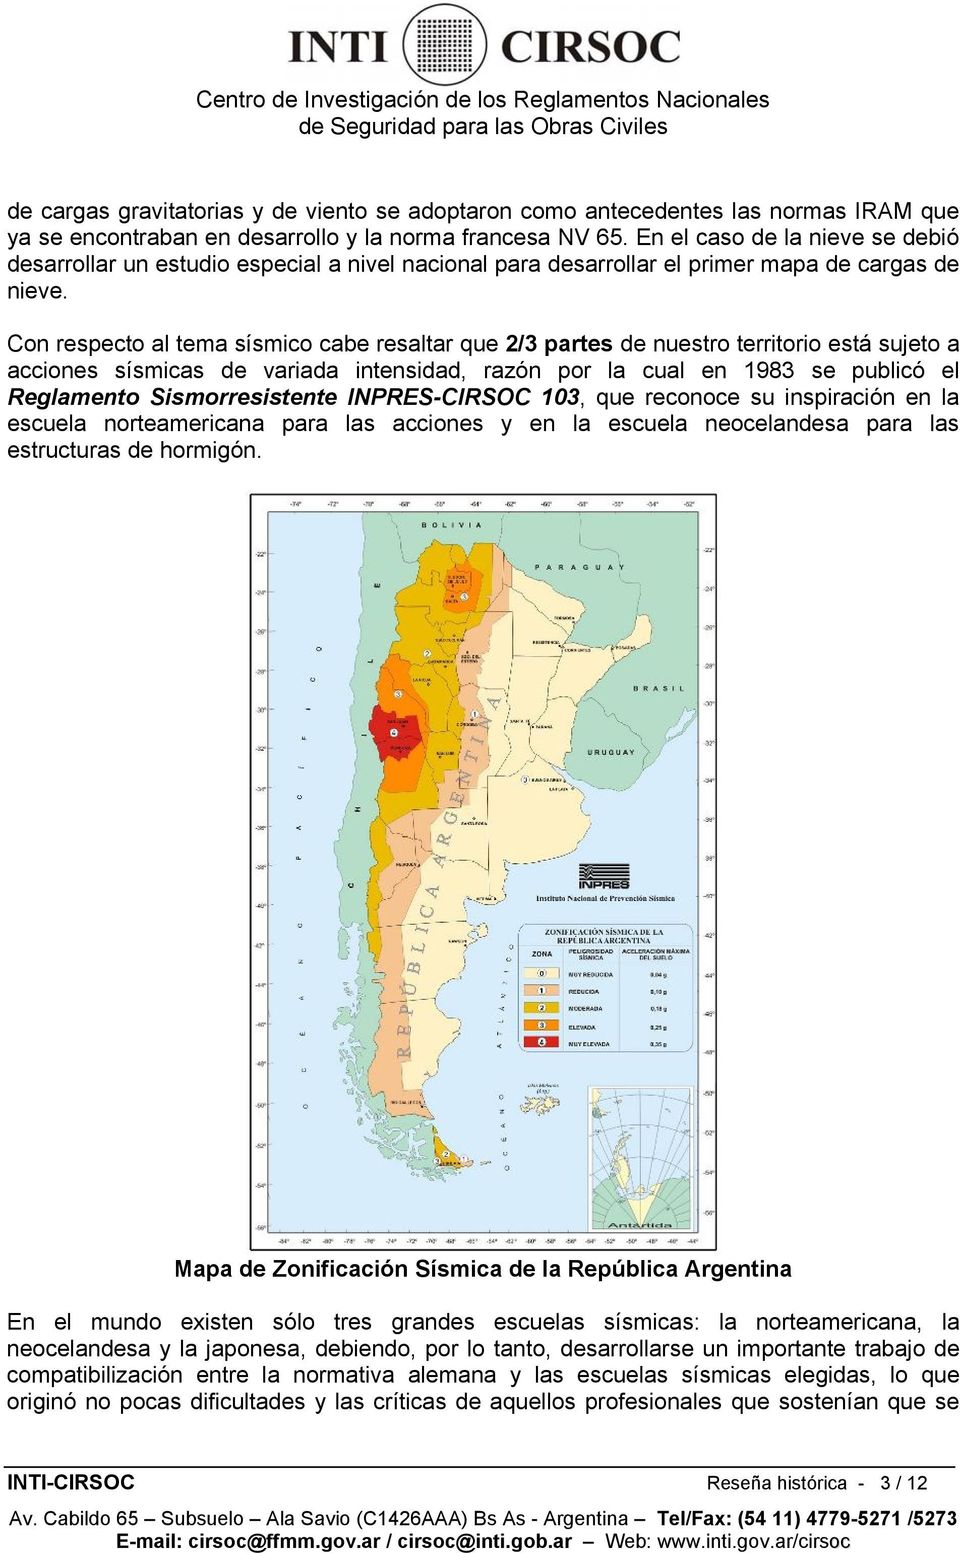 Con respecto al tema sísmico cabe resaltar que 2/3 partes de nuestro territorio está sujeto a acciones sísmicas de variada intensidad, razón por la cual en 1983 se publicó el Reglamento